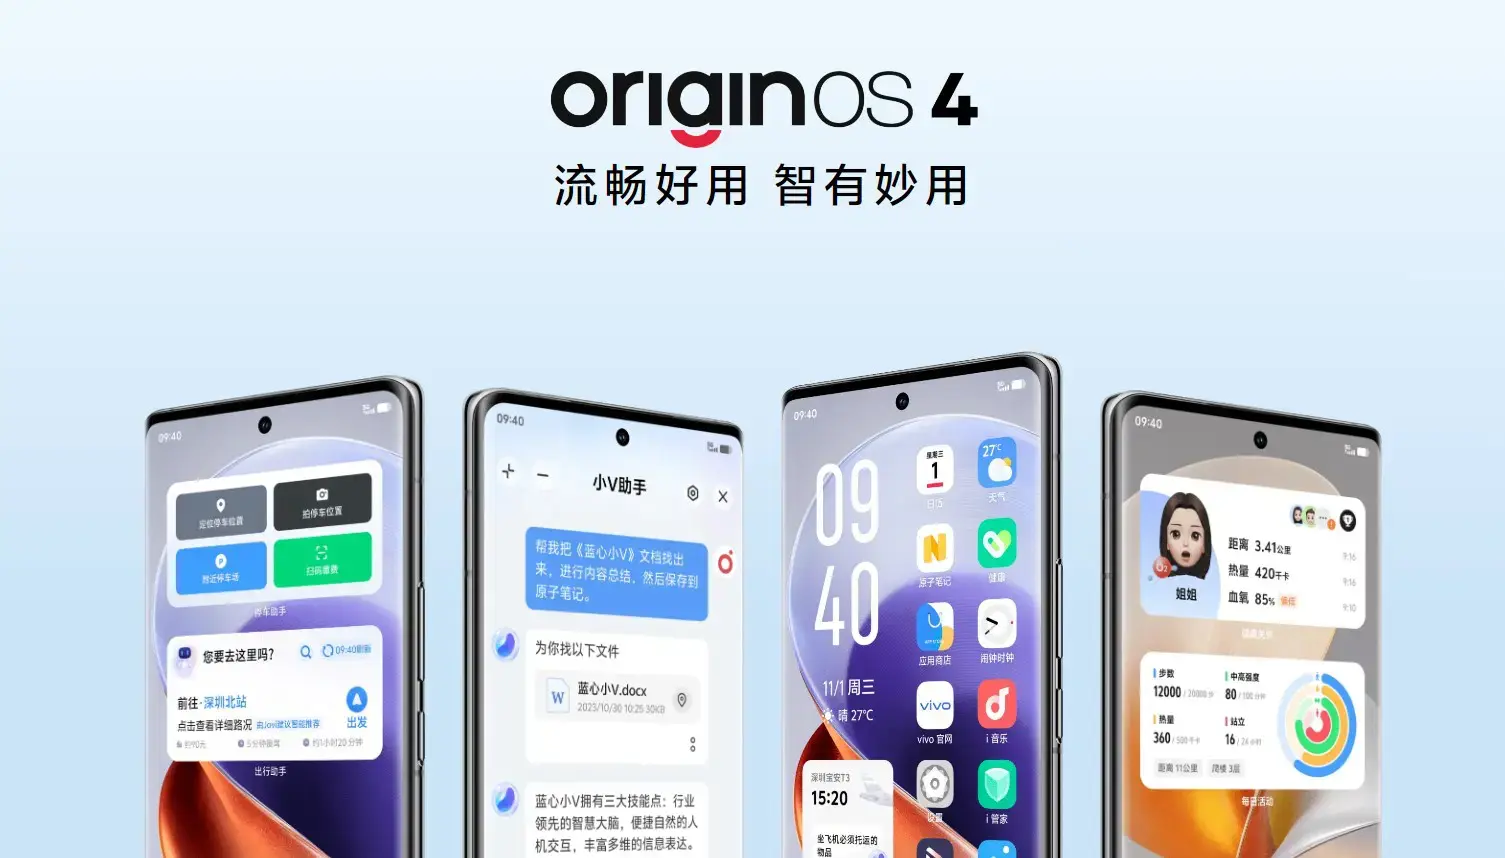 OriginOS 4 er vivos nye fastvare som optimaliserer minnet, reduserer strømforbruket og forbedrer driftstiden.